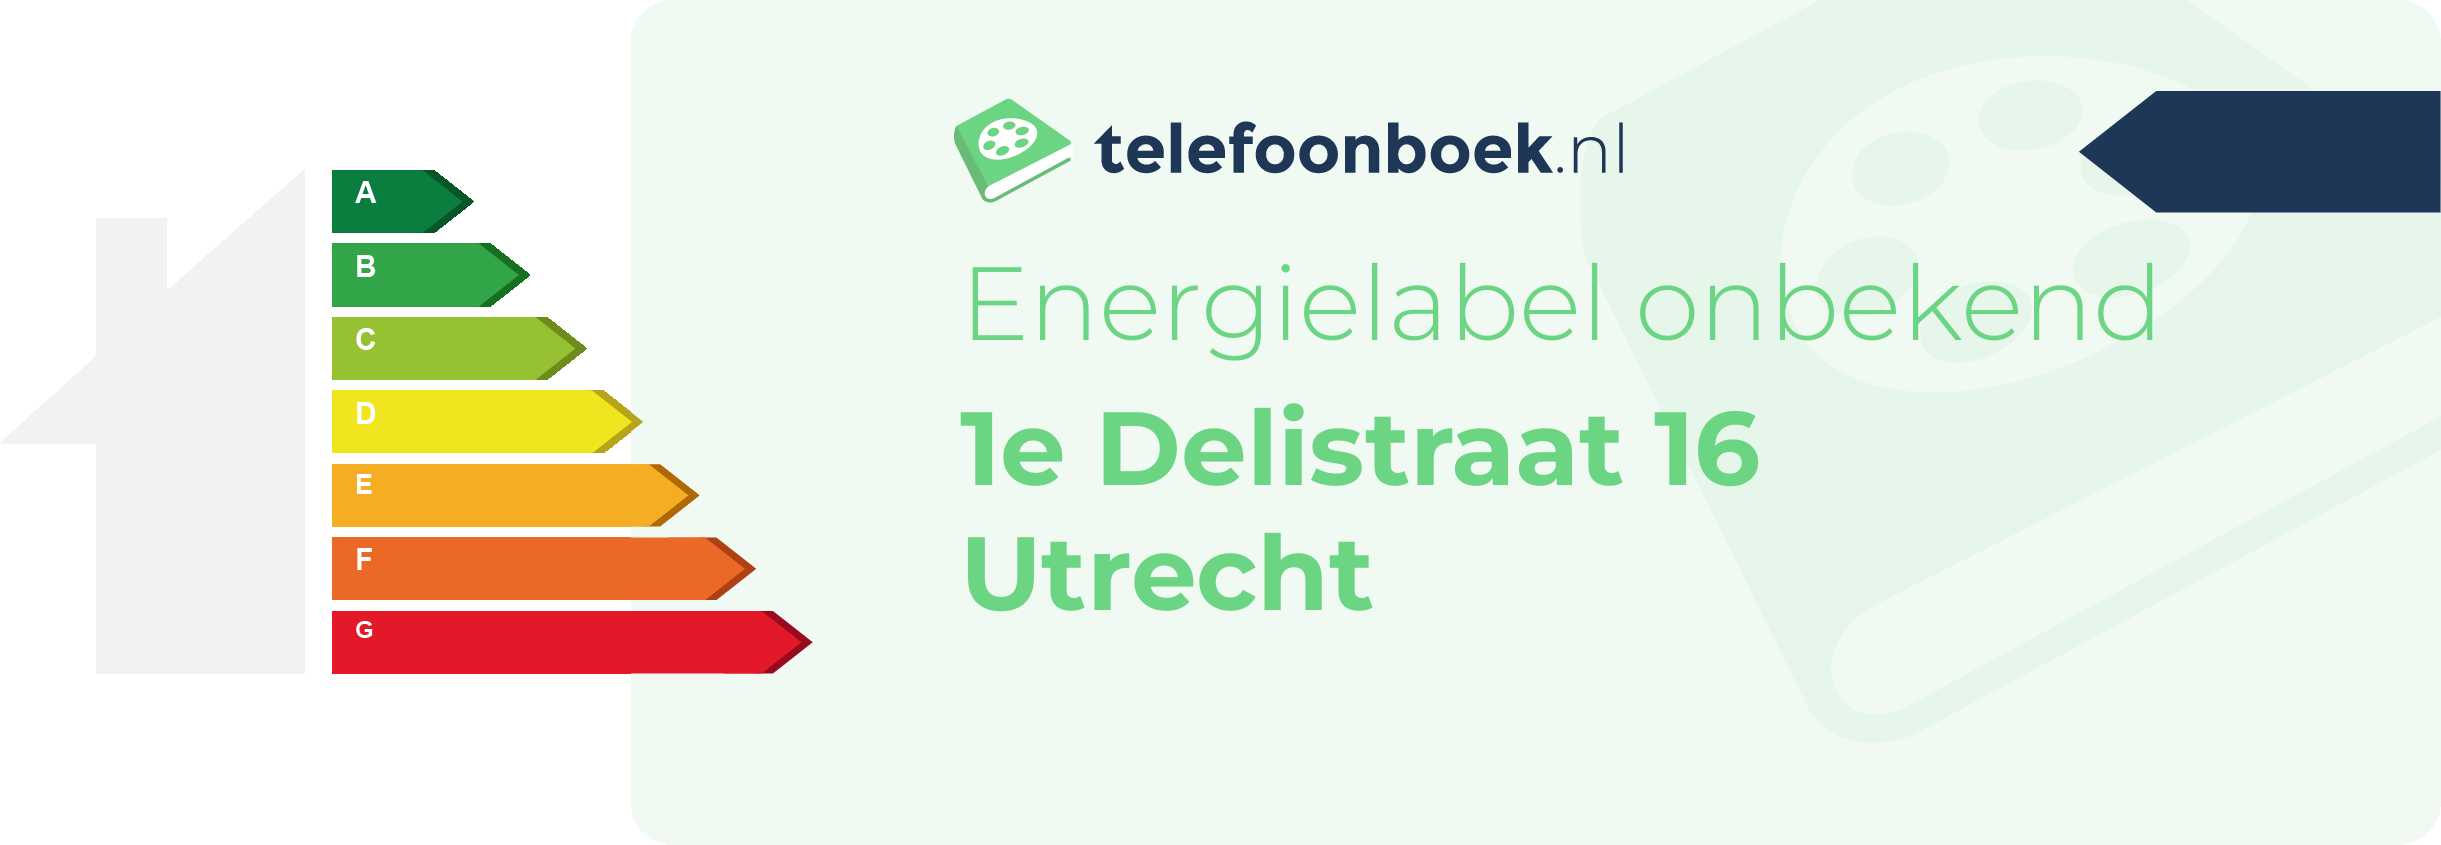 Energielabel 1e Delistraat 16 Utrecht